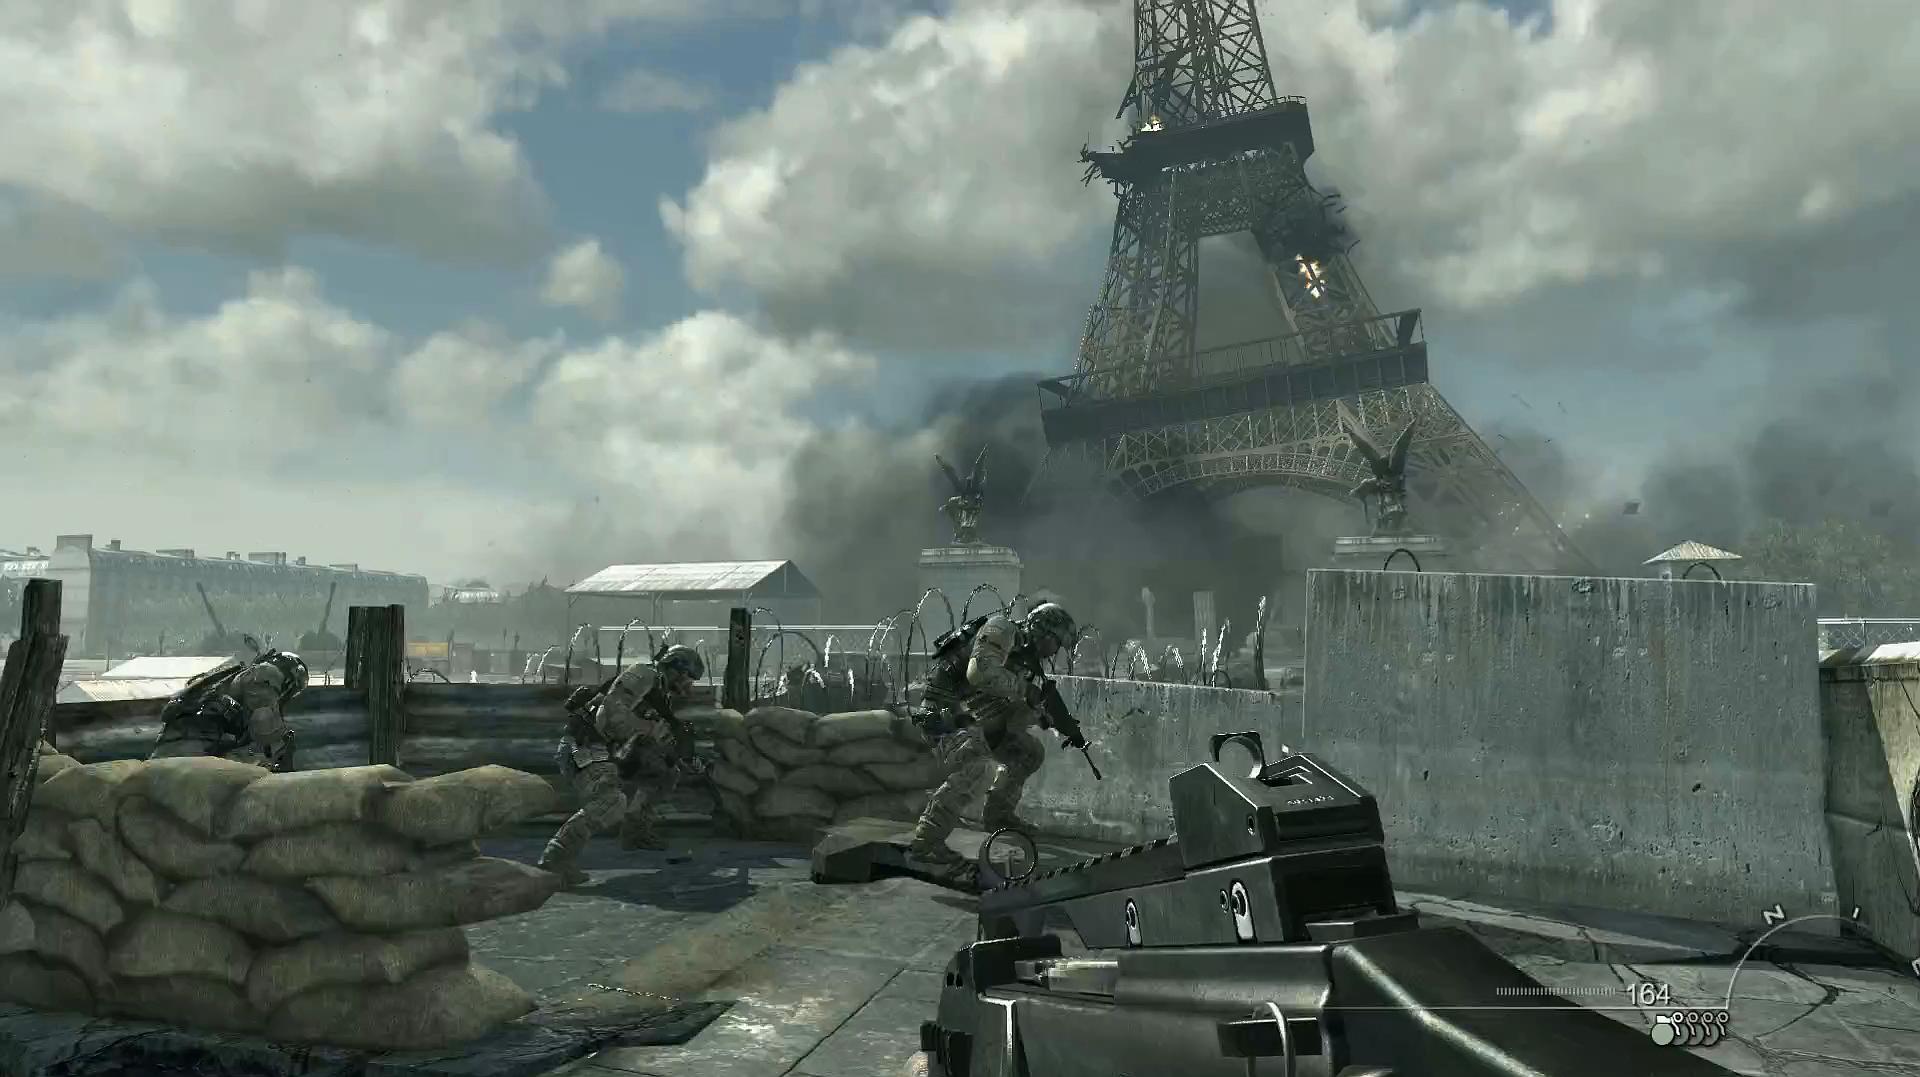 [图]使命召唤8现代战争3:法国巴黎成为战区 埃菲尔铁塔倒塌